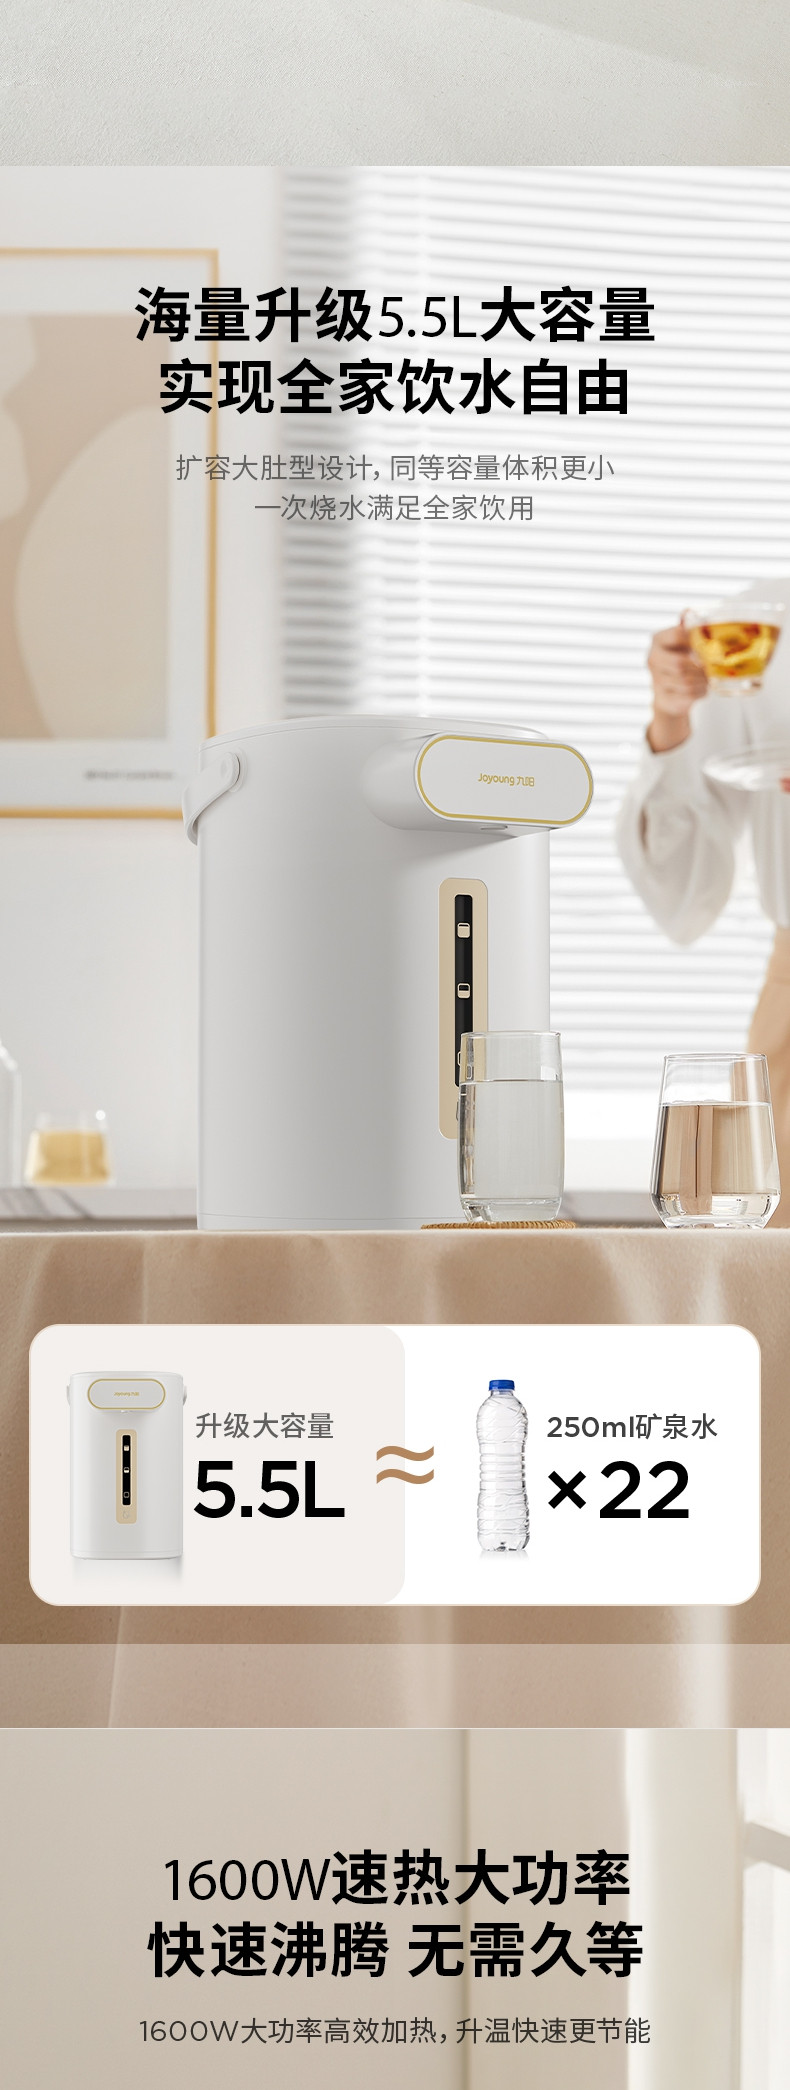 九阳 电热水瓶K55ED-WP6130